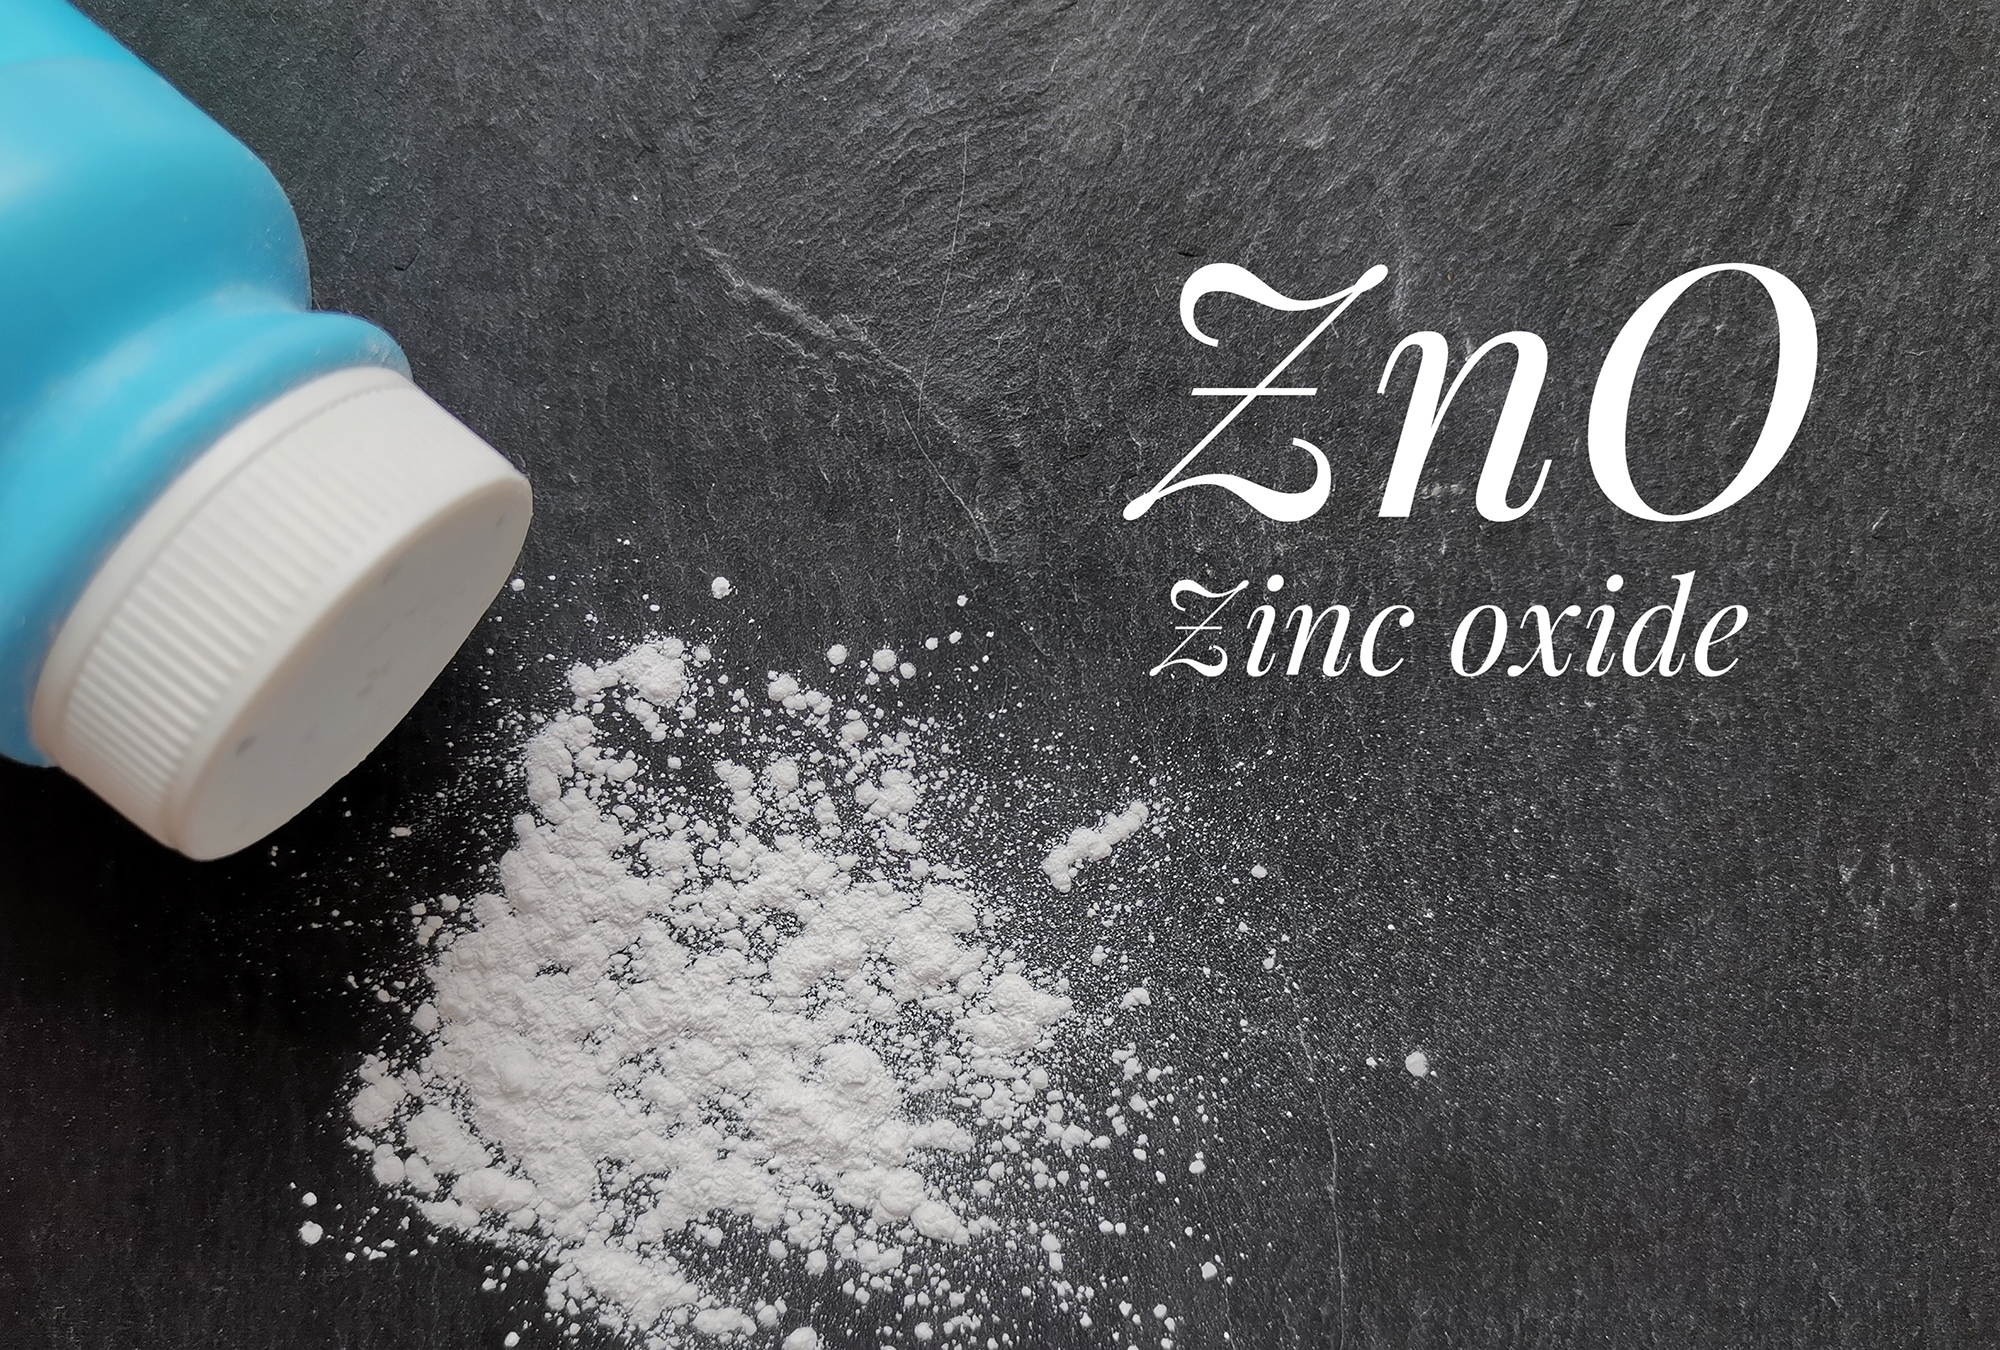 Compaction Zinc oxide